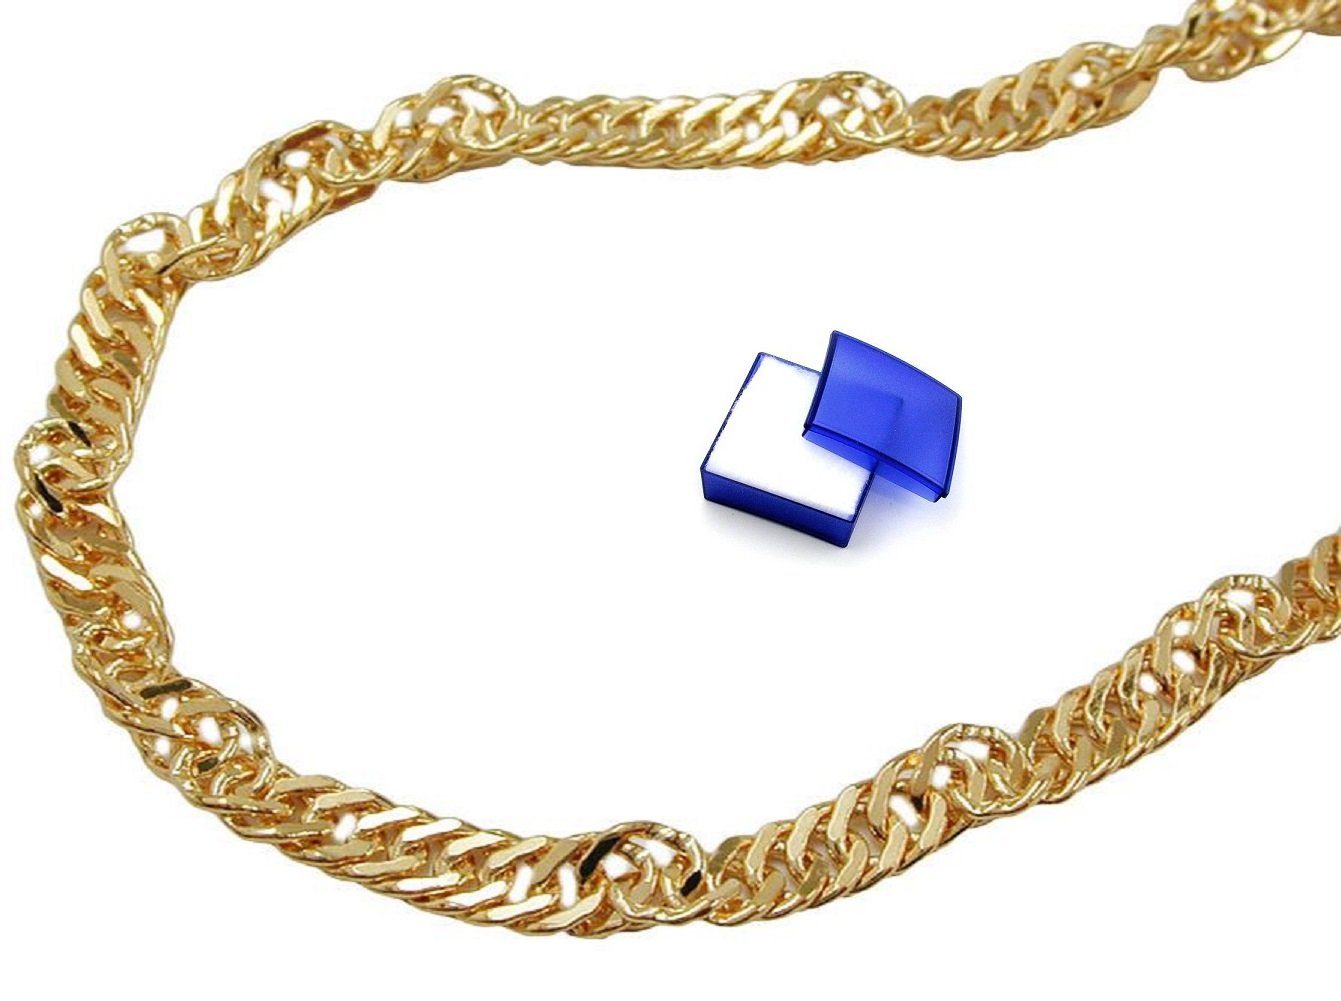 unbespielt Goldkette Halskette Kette 1,8 mm Singapurkette 9 Karat Gold 50 cm inklusive Schmuckbox, Goldschmuck für Damen und Herren